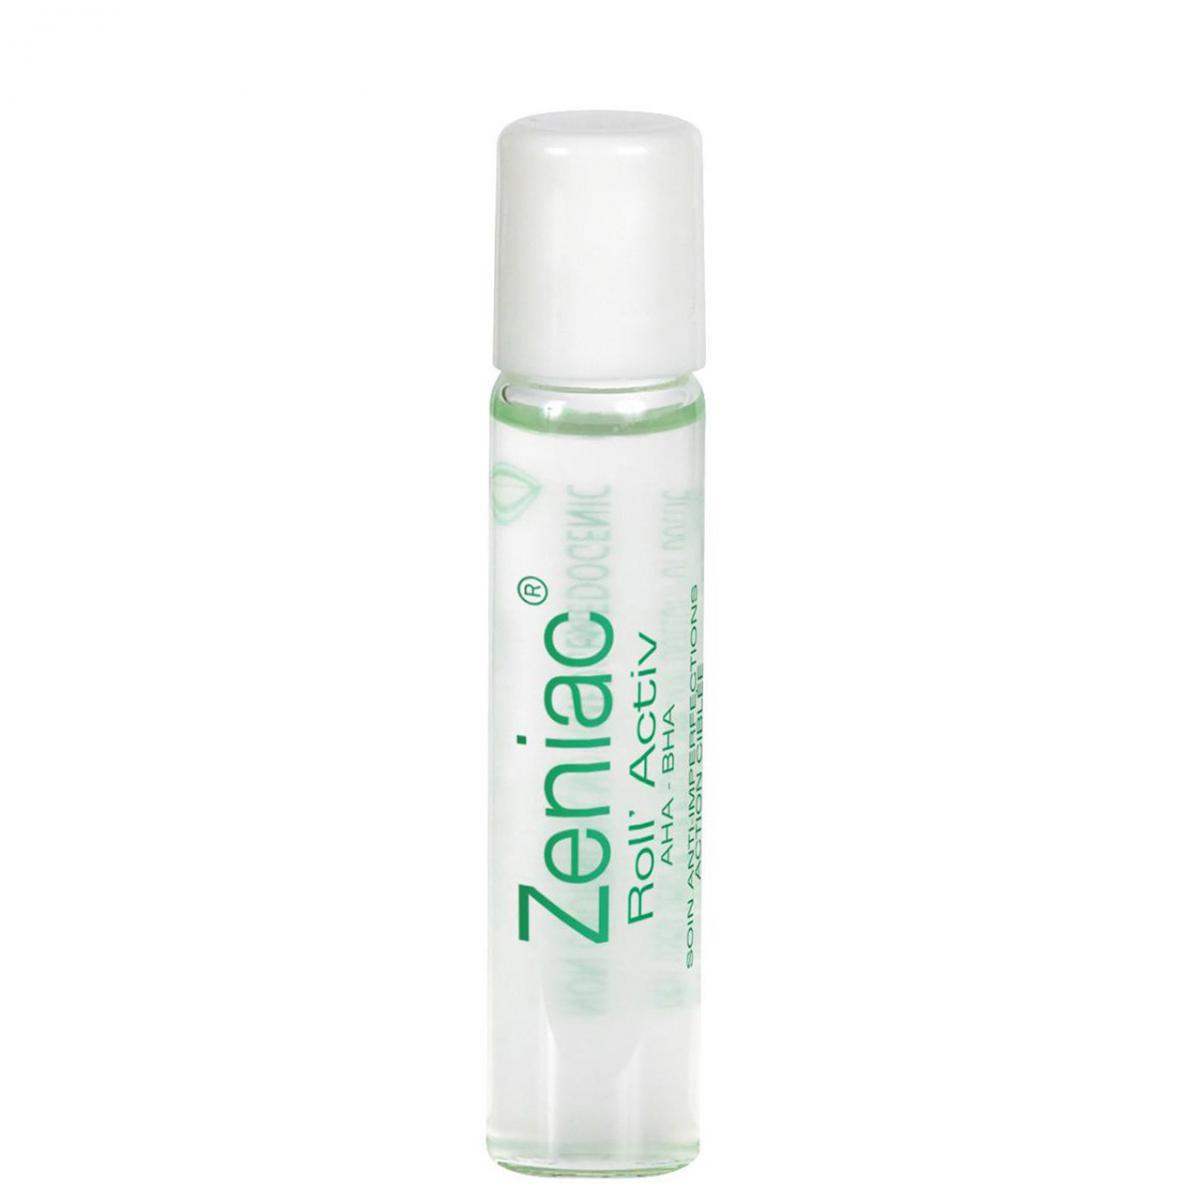 رل اکتیو زنیاک - Zeniac ROLL ACTIV